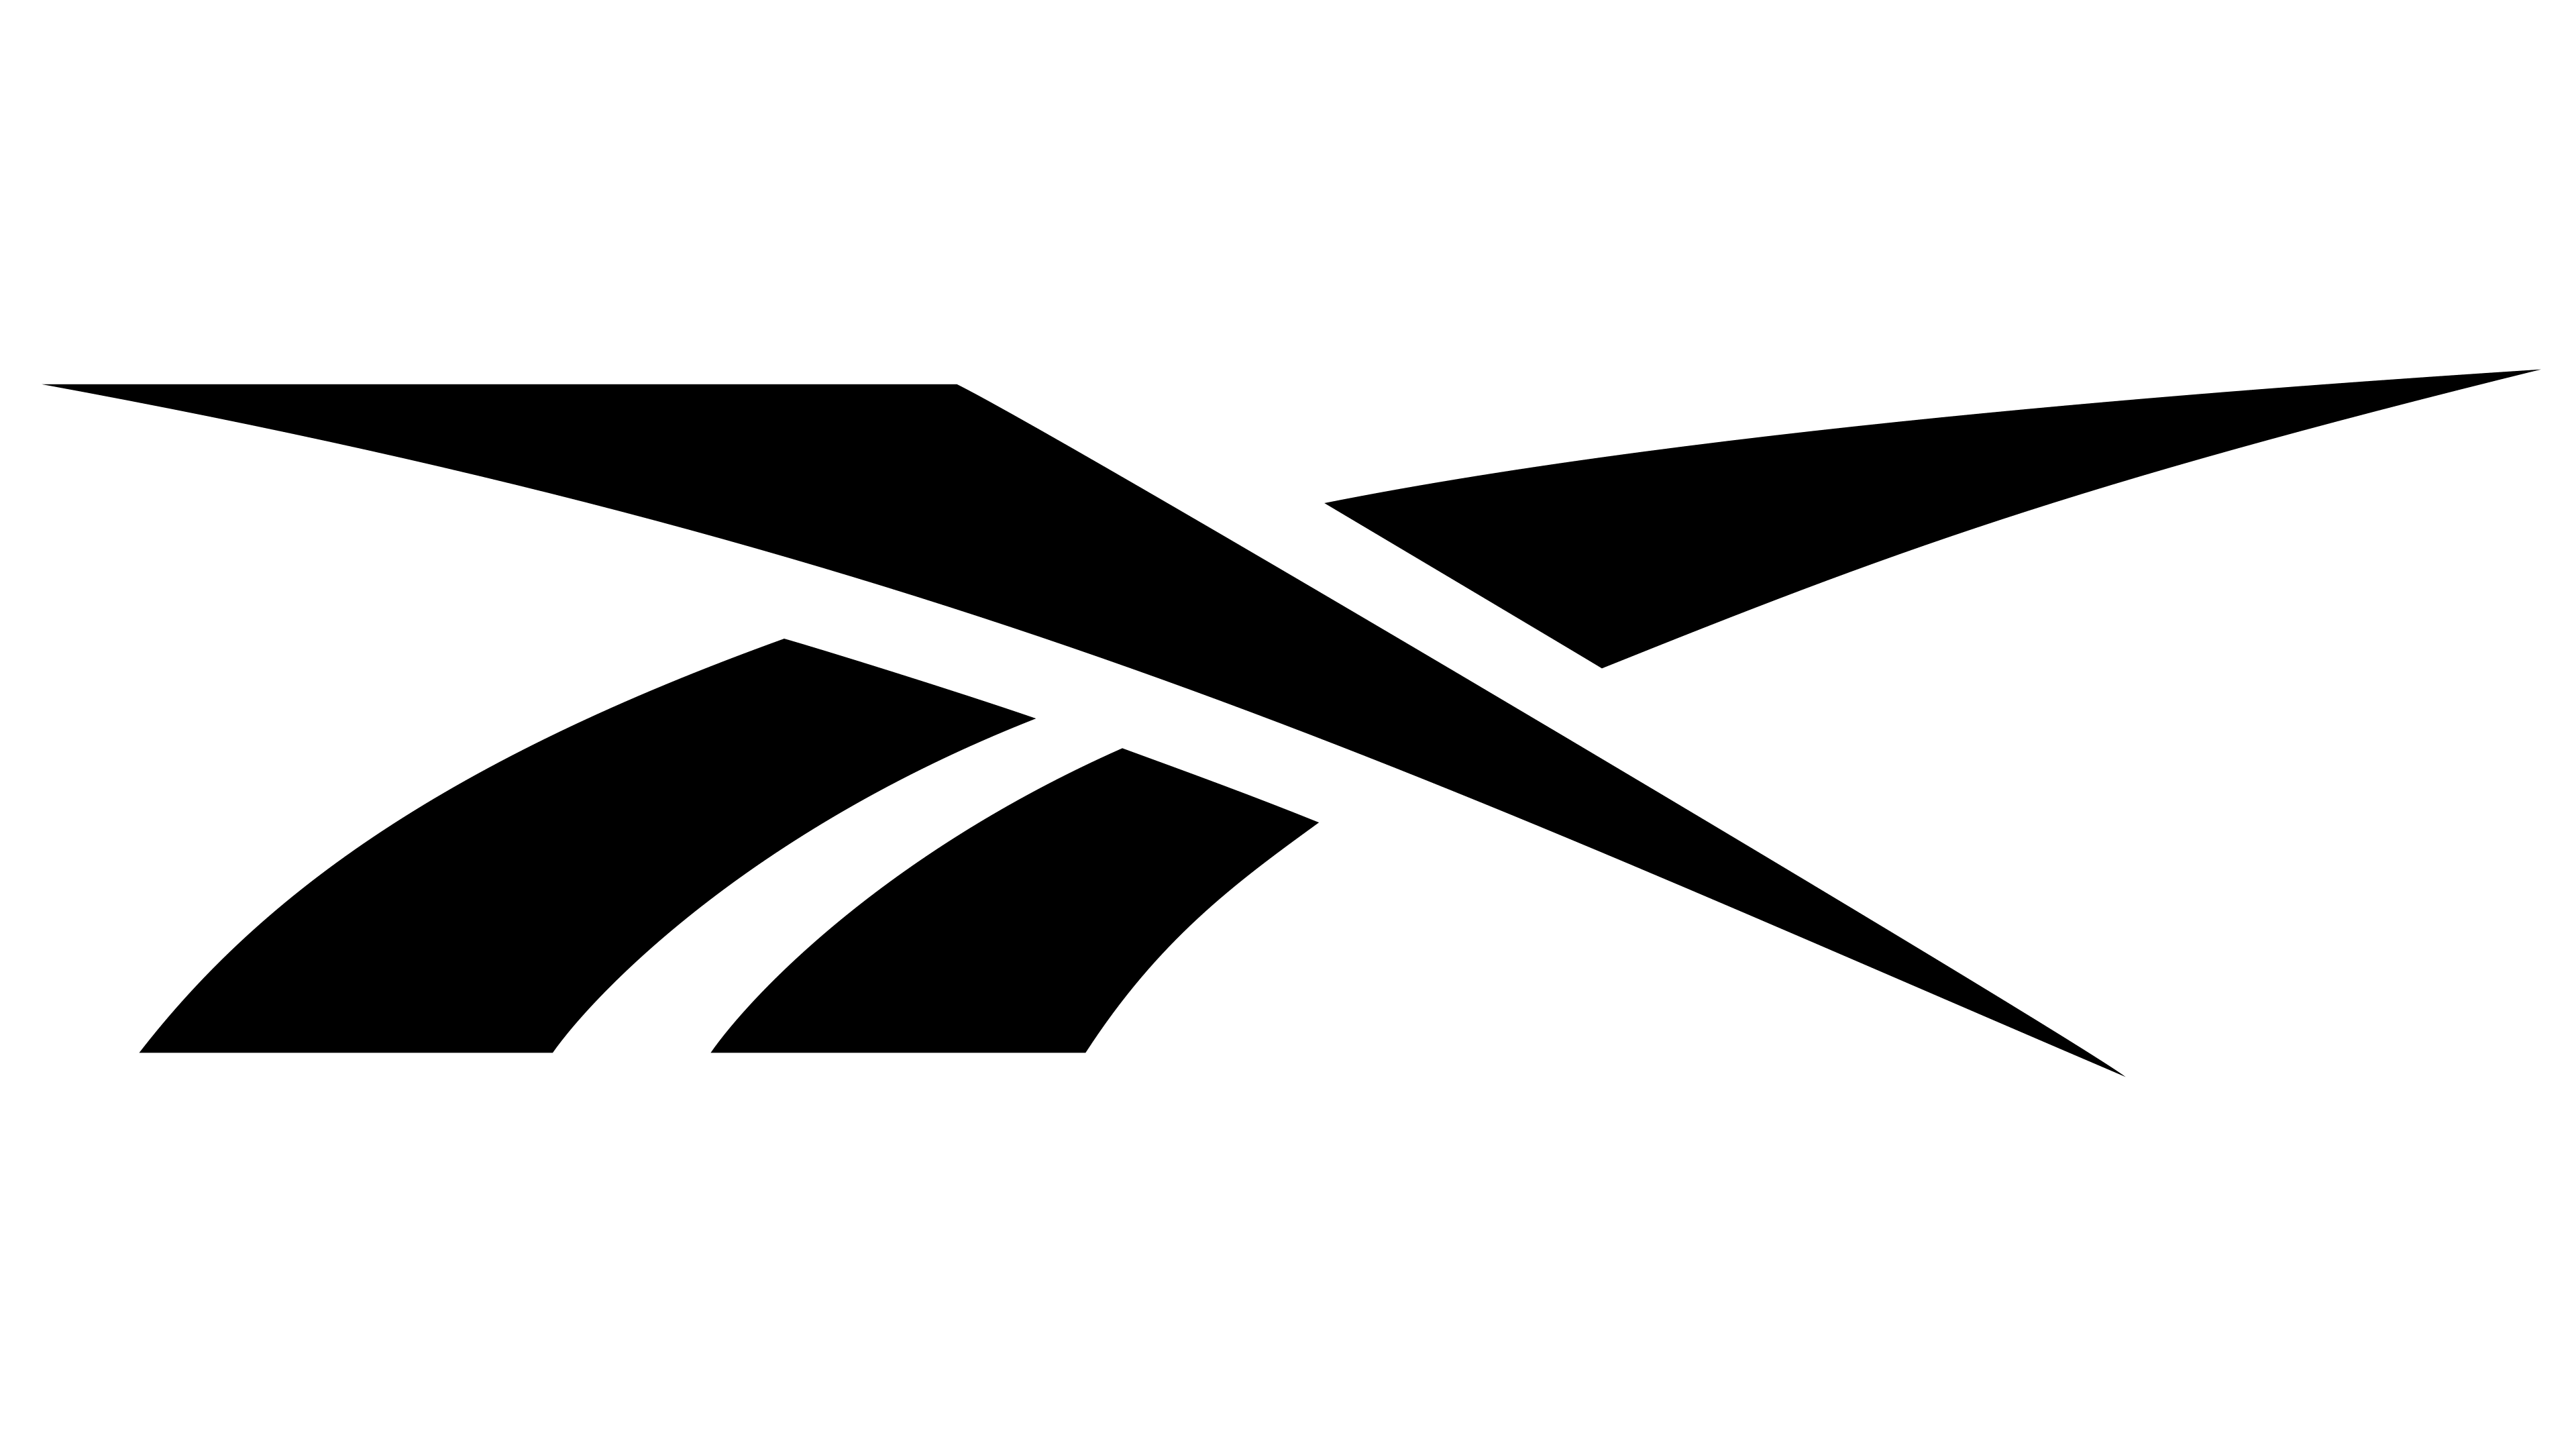 Reebok Logo y significado, historia, PNG, marca